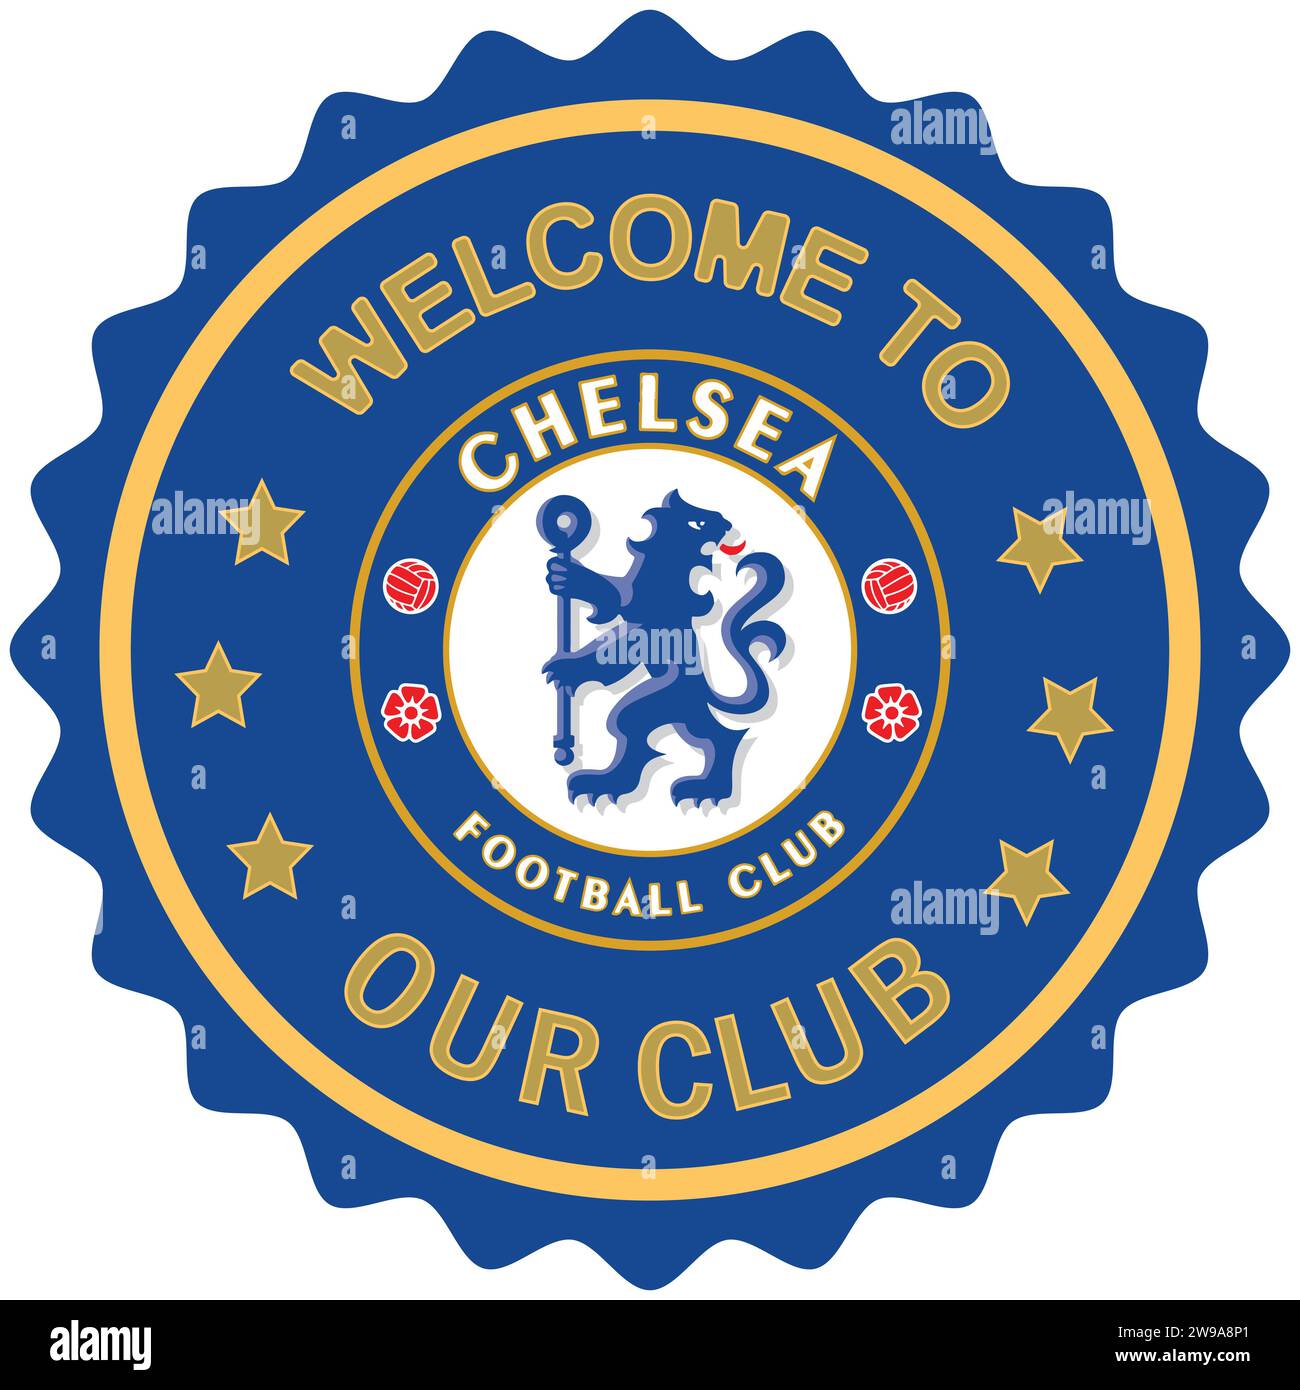 Benvenuto al Chelsea FC, colorato timbro e sigillo, squadra di calcio professionistica inglese Vector Illustration Abstract Editable image Illustrazione Vettoriale